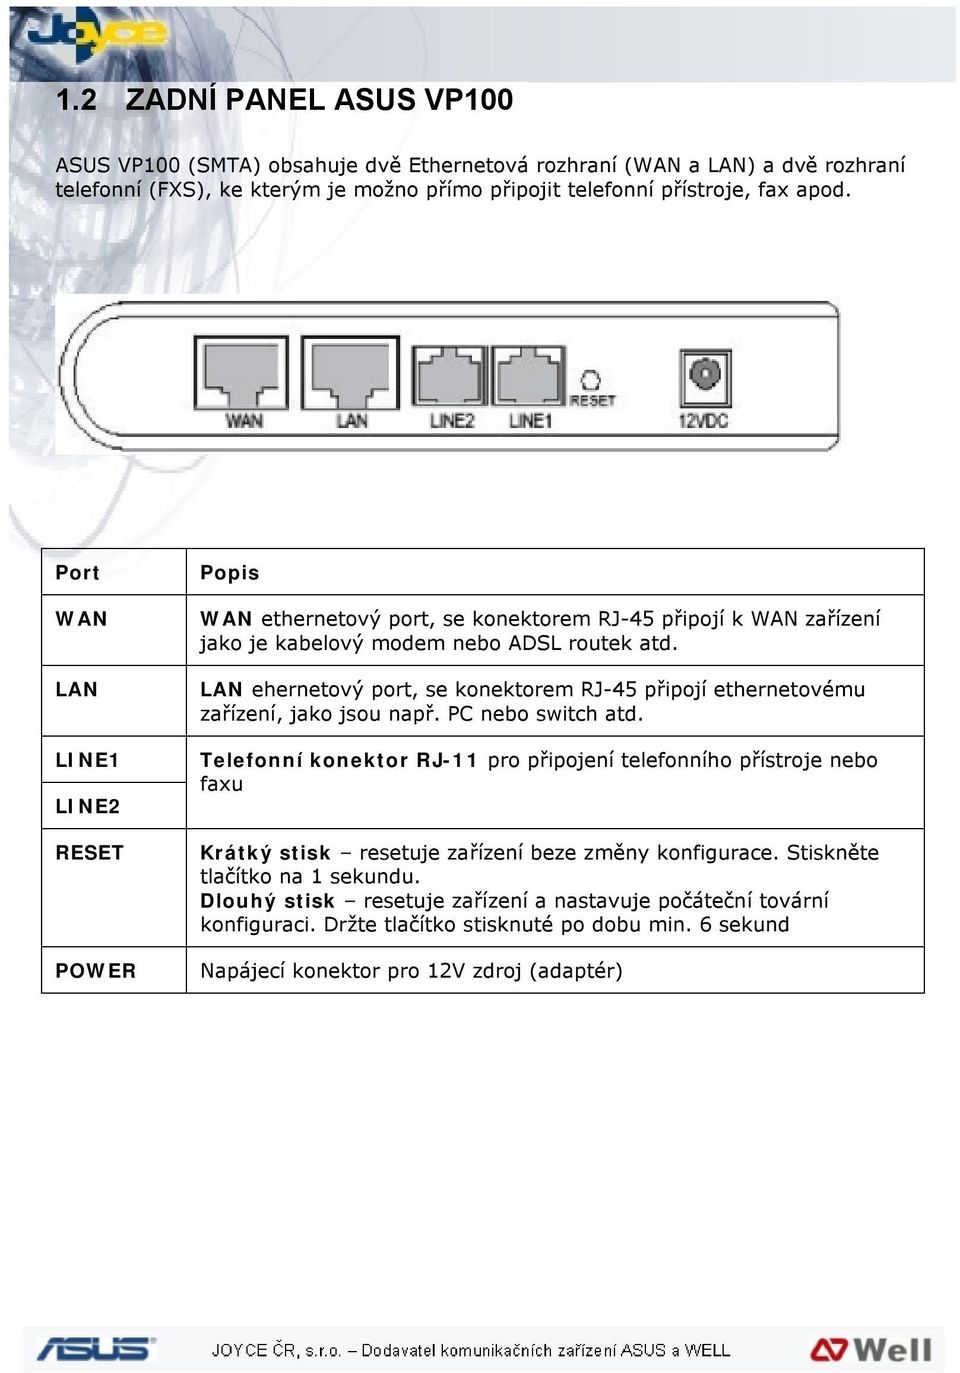 LAN ehernetový port, se konektorem RJ-45 připojí ethernetovému zařízení, jako jsou např. PC nebo switch atd.